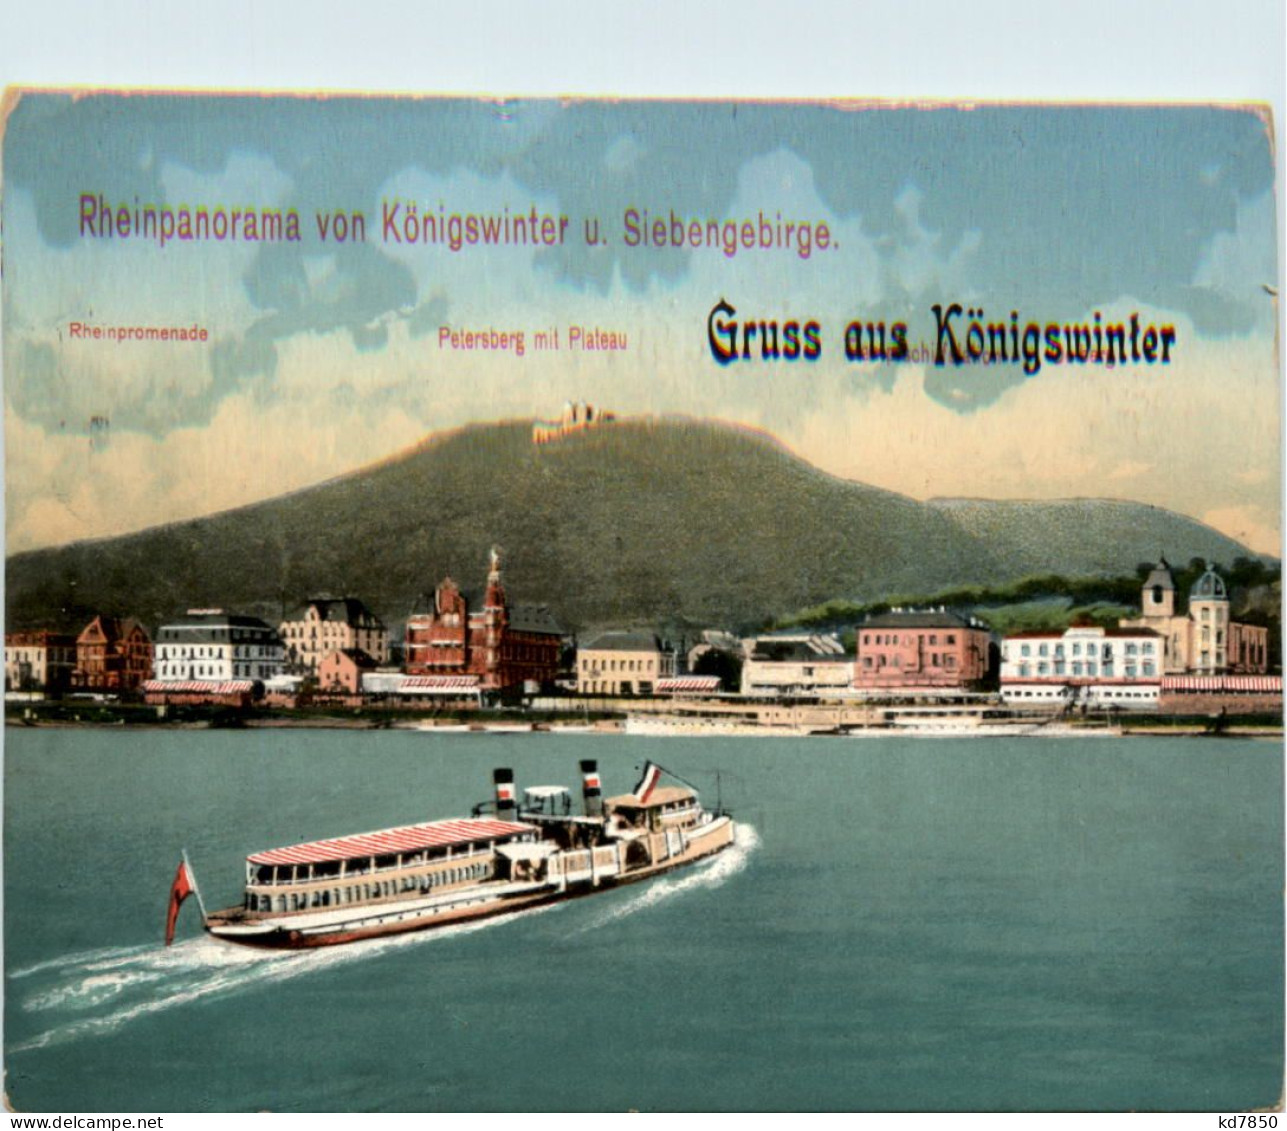 Gruss Aus Königswinter, Rheinpanorama - Koenigswinter